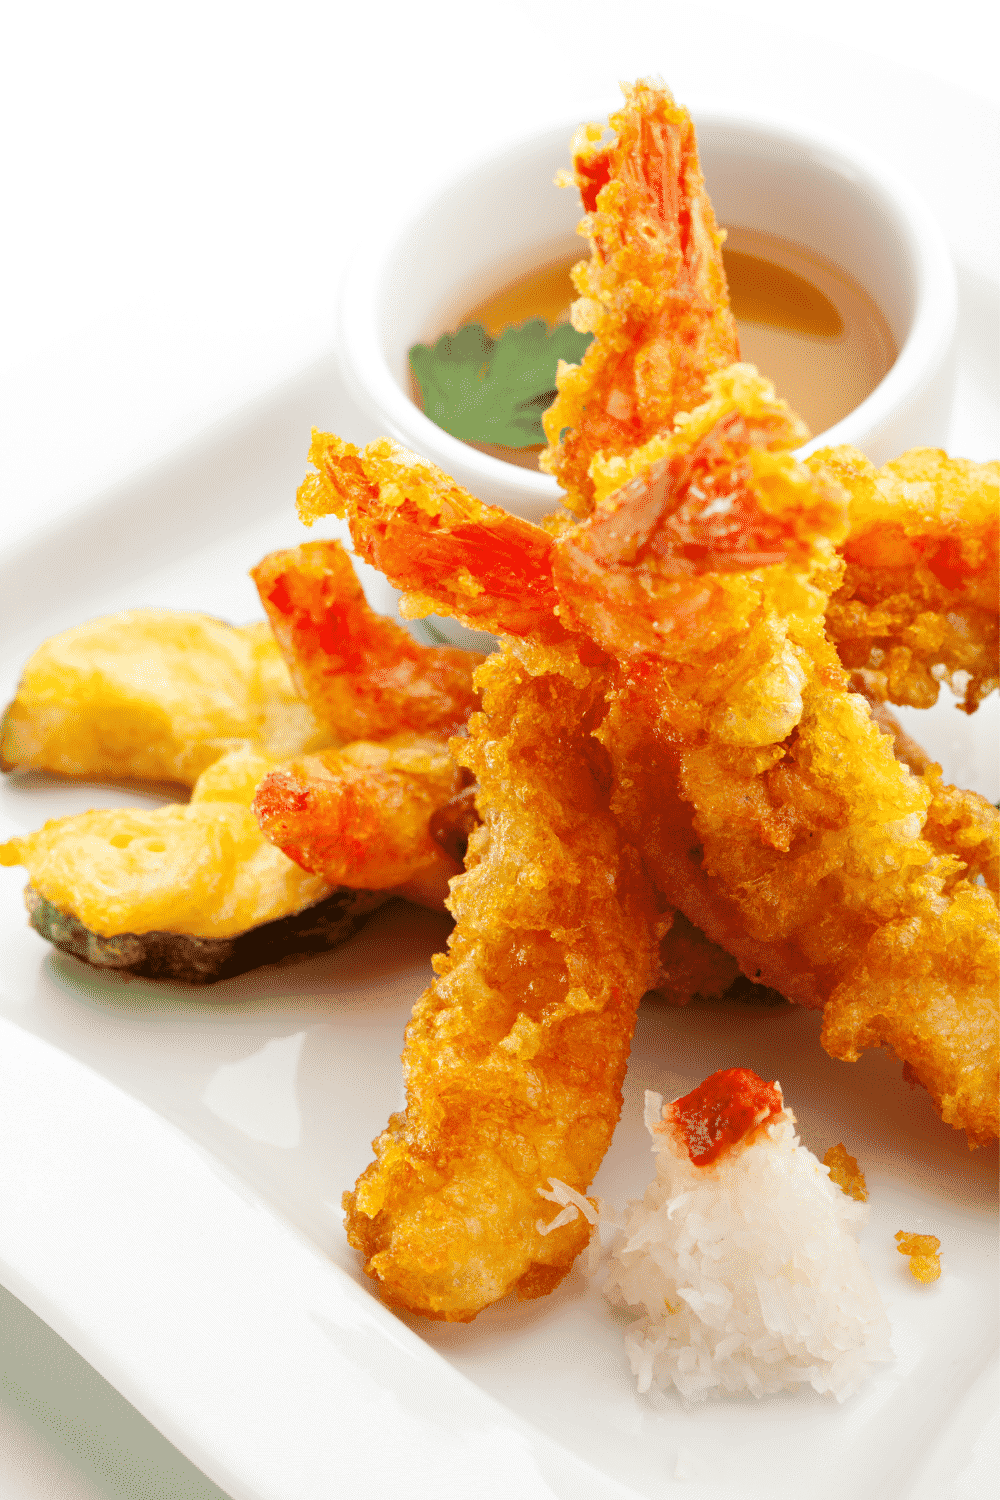 How To Cook Costco Shrimp Tempura